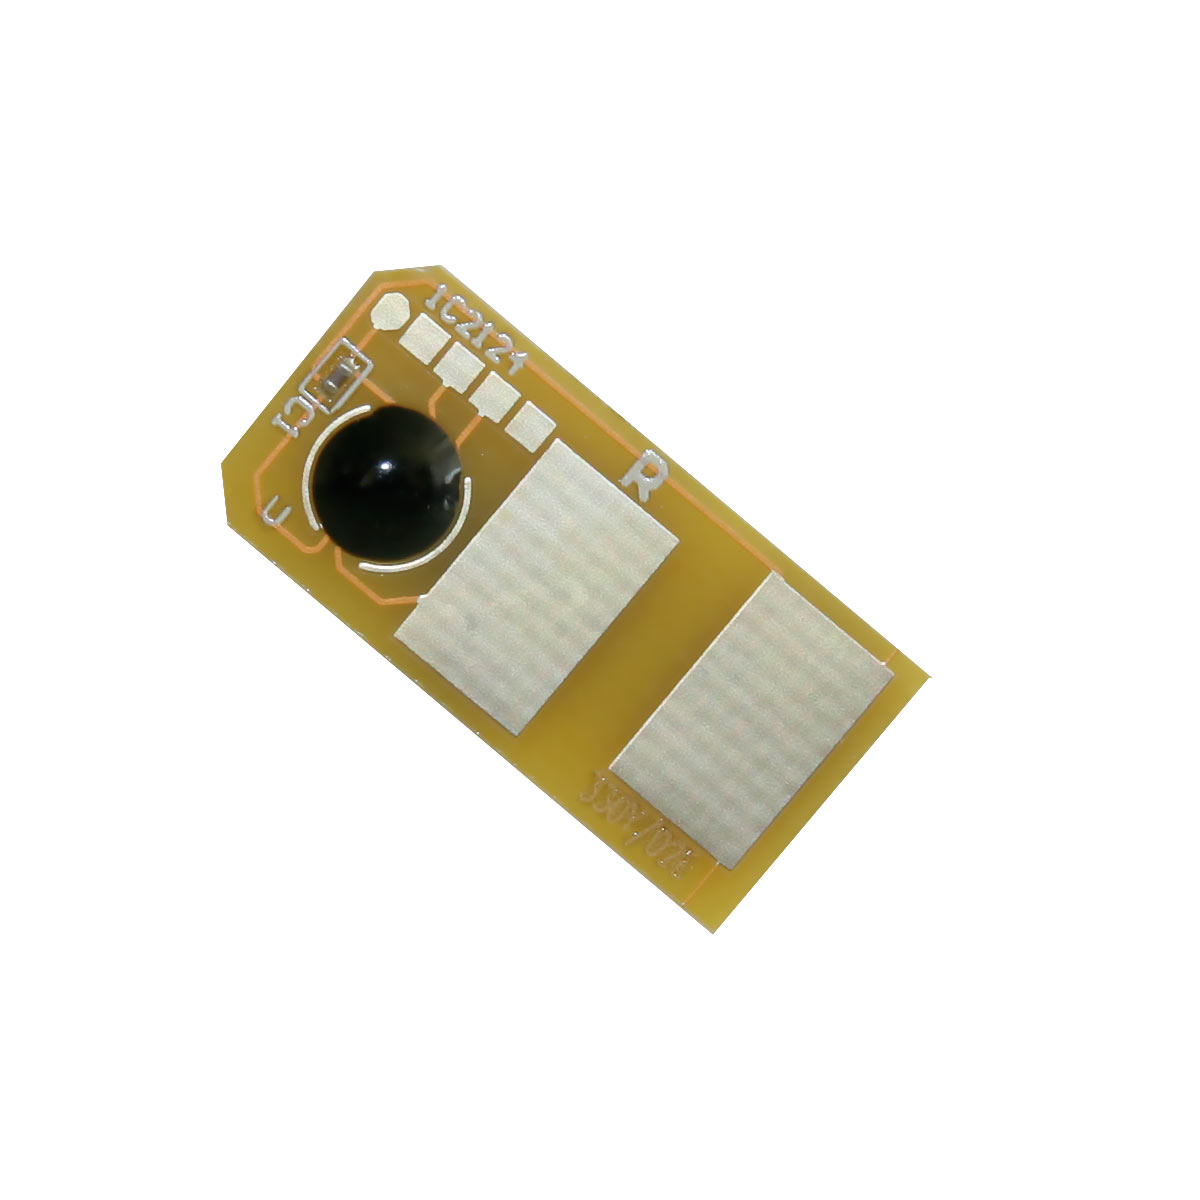 Chip zliczający OKI MC 352